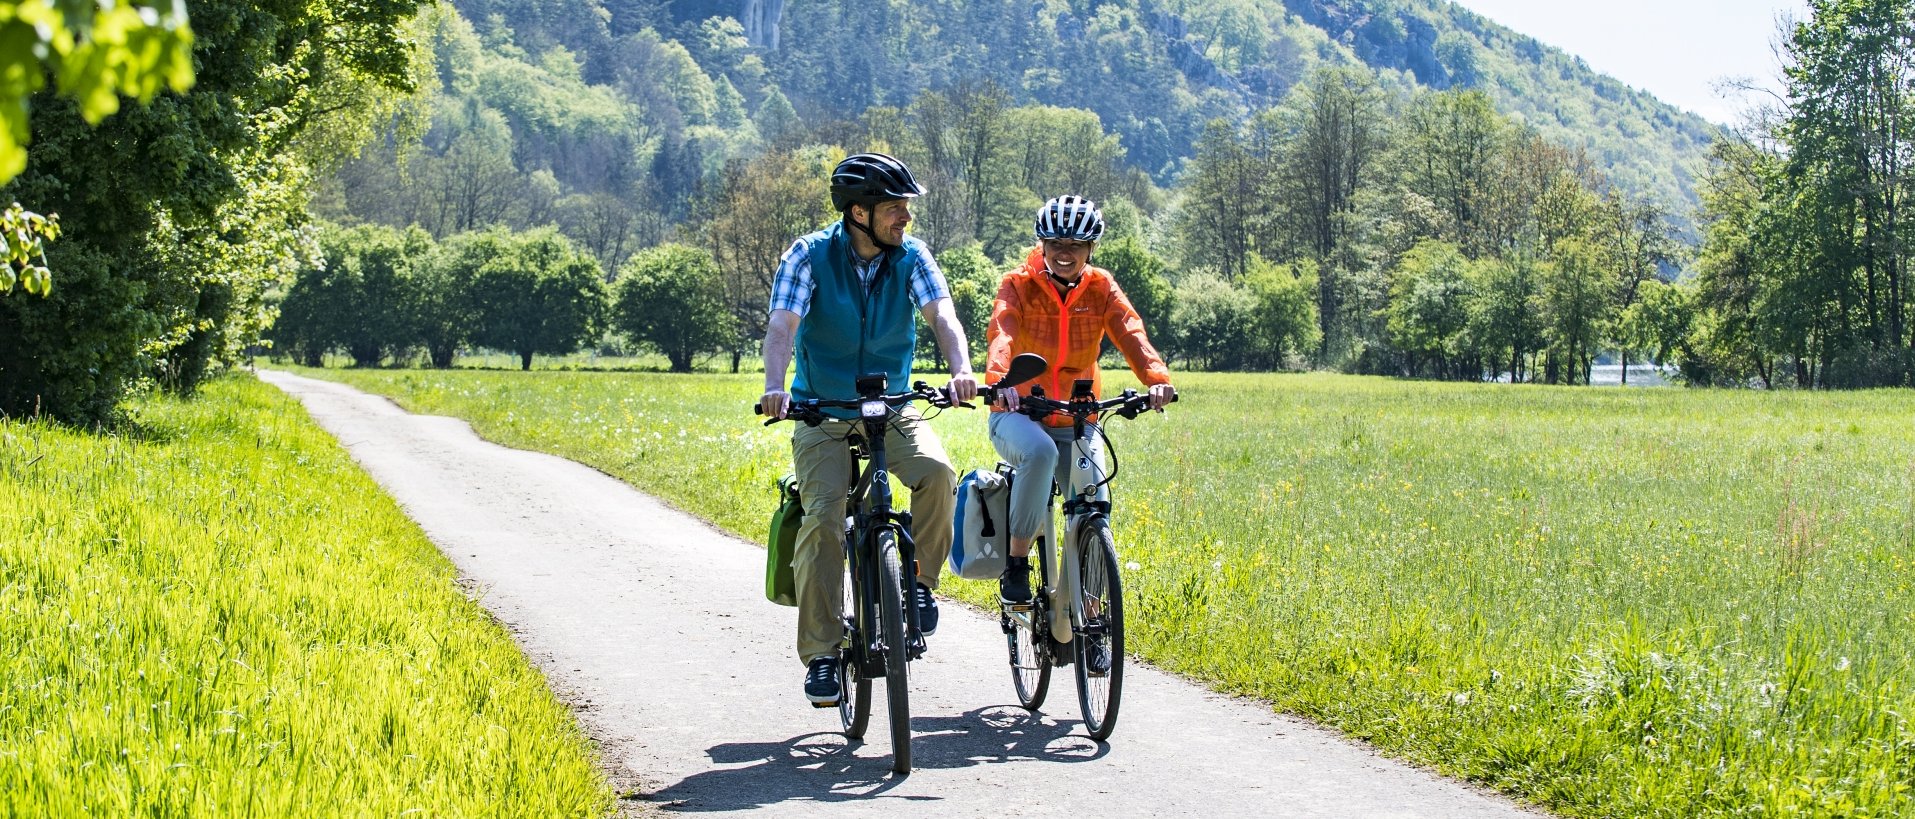 Auf diesem Bild sieht man zwei Radfahrer am Altmühltalradweg